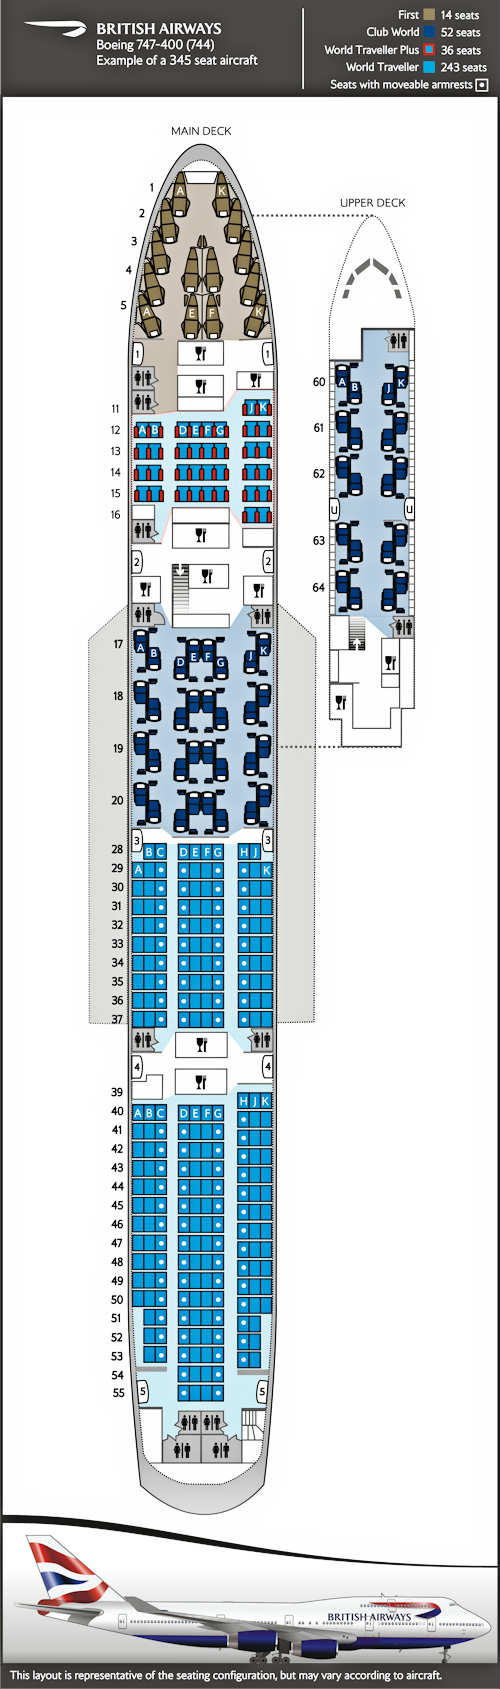 Plan de cabine pour Boeing 747-400, 4 classes 345 sièges.